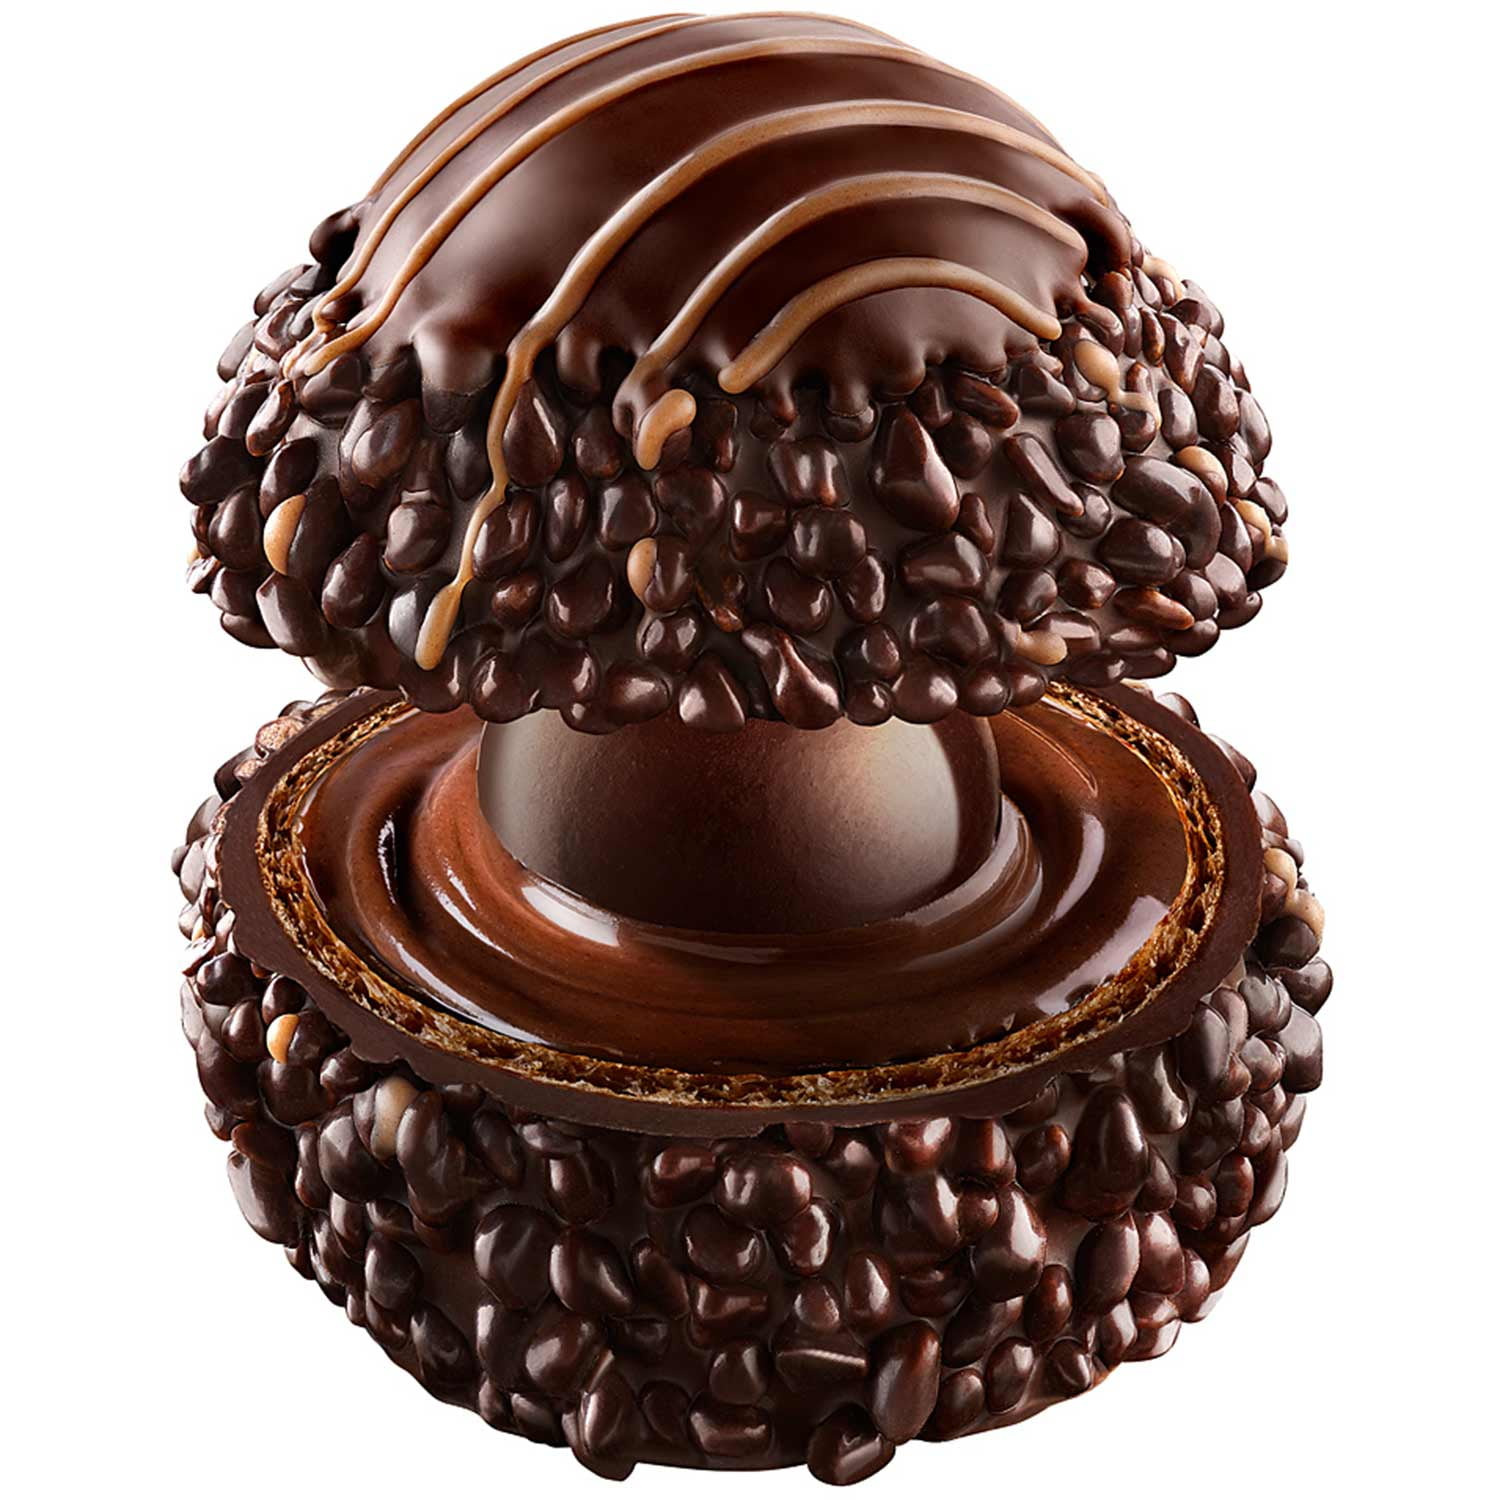 Ferrero Rocher Rondnoir Dark Chocolates Pralines 138g 4.86 Oz